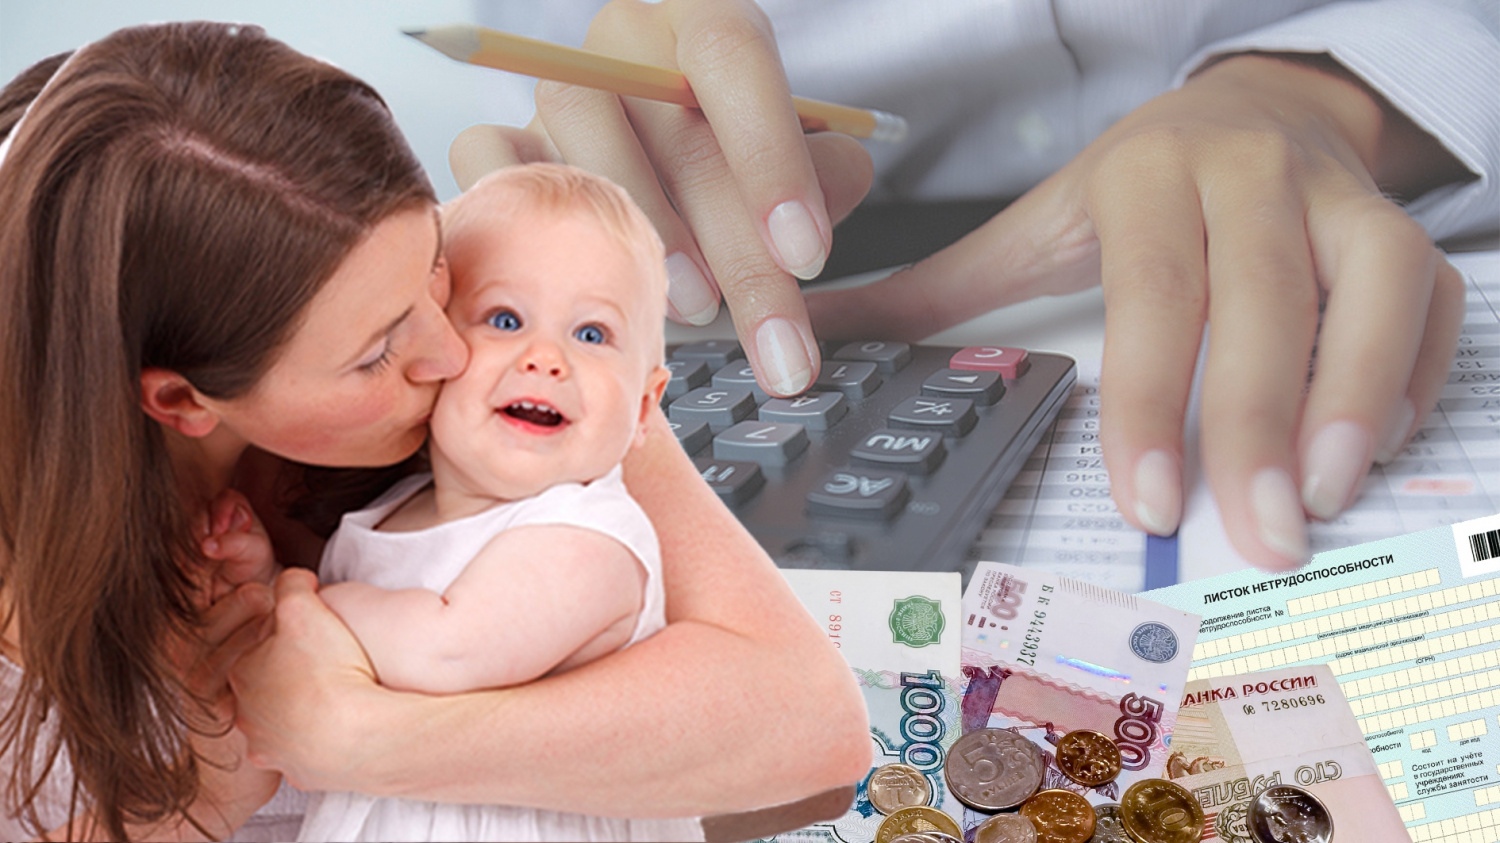 ПФР завершает приём заявлений на выплаты семьям с детьми